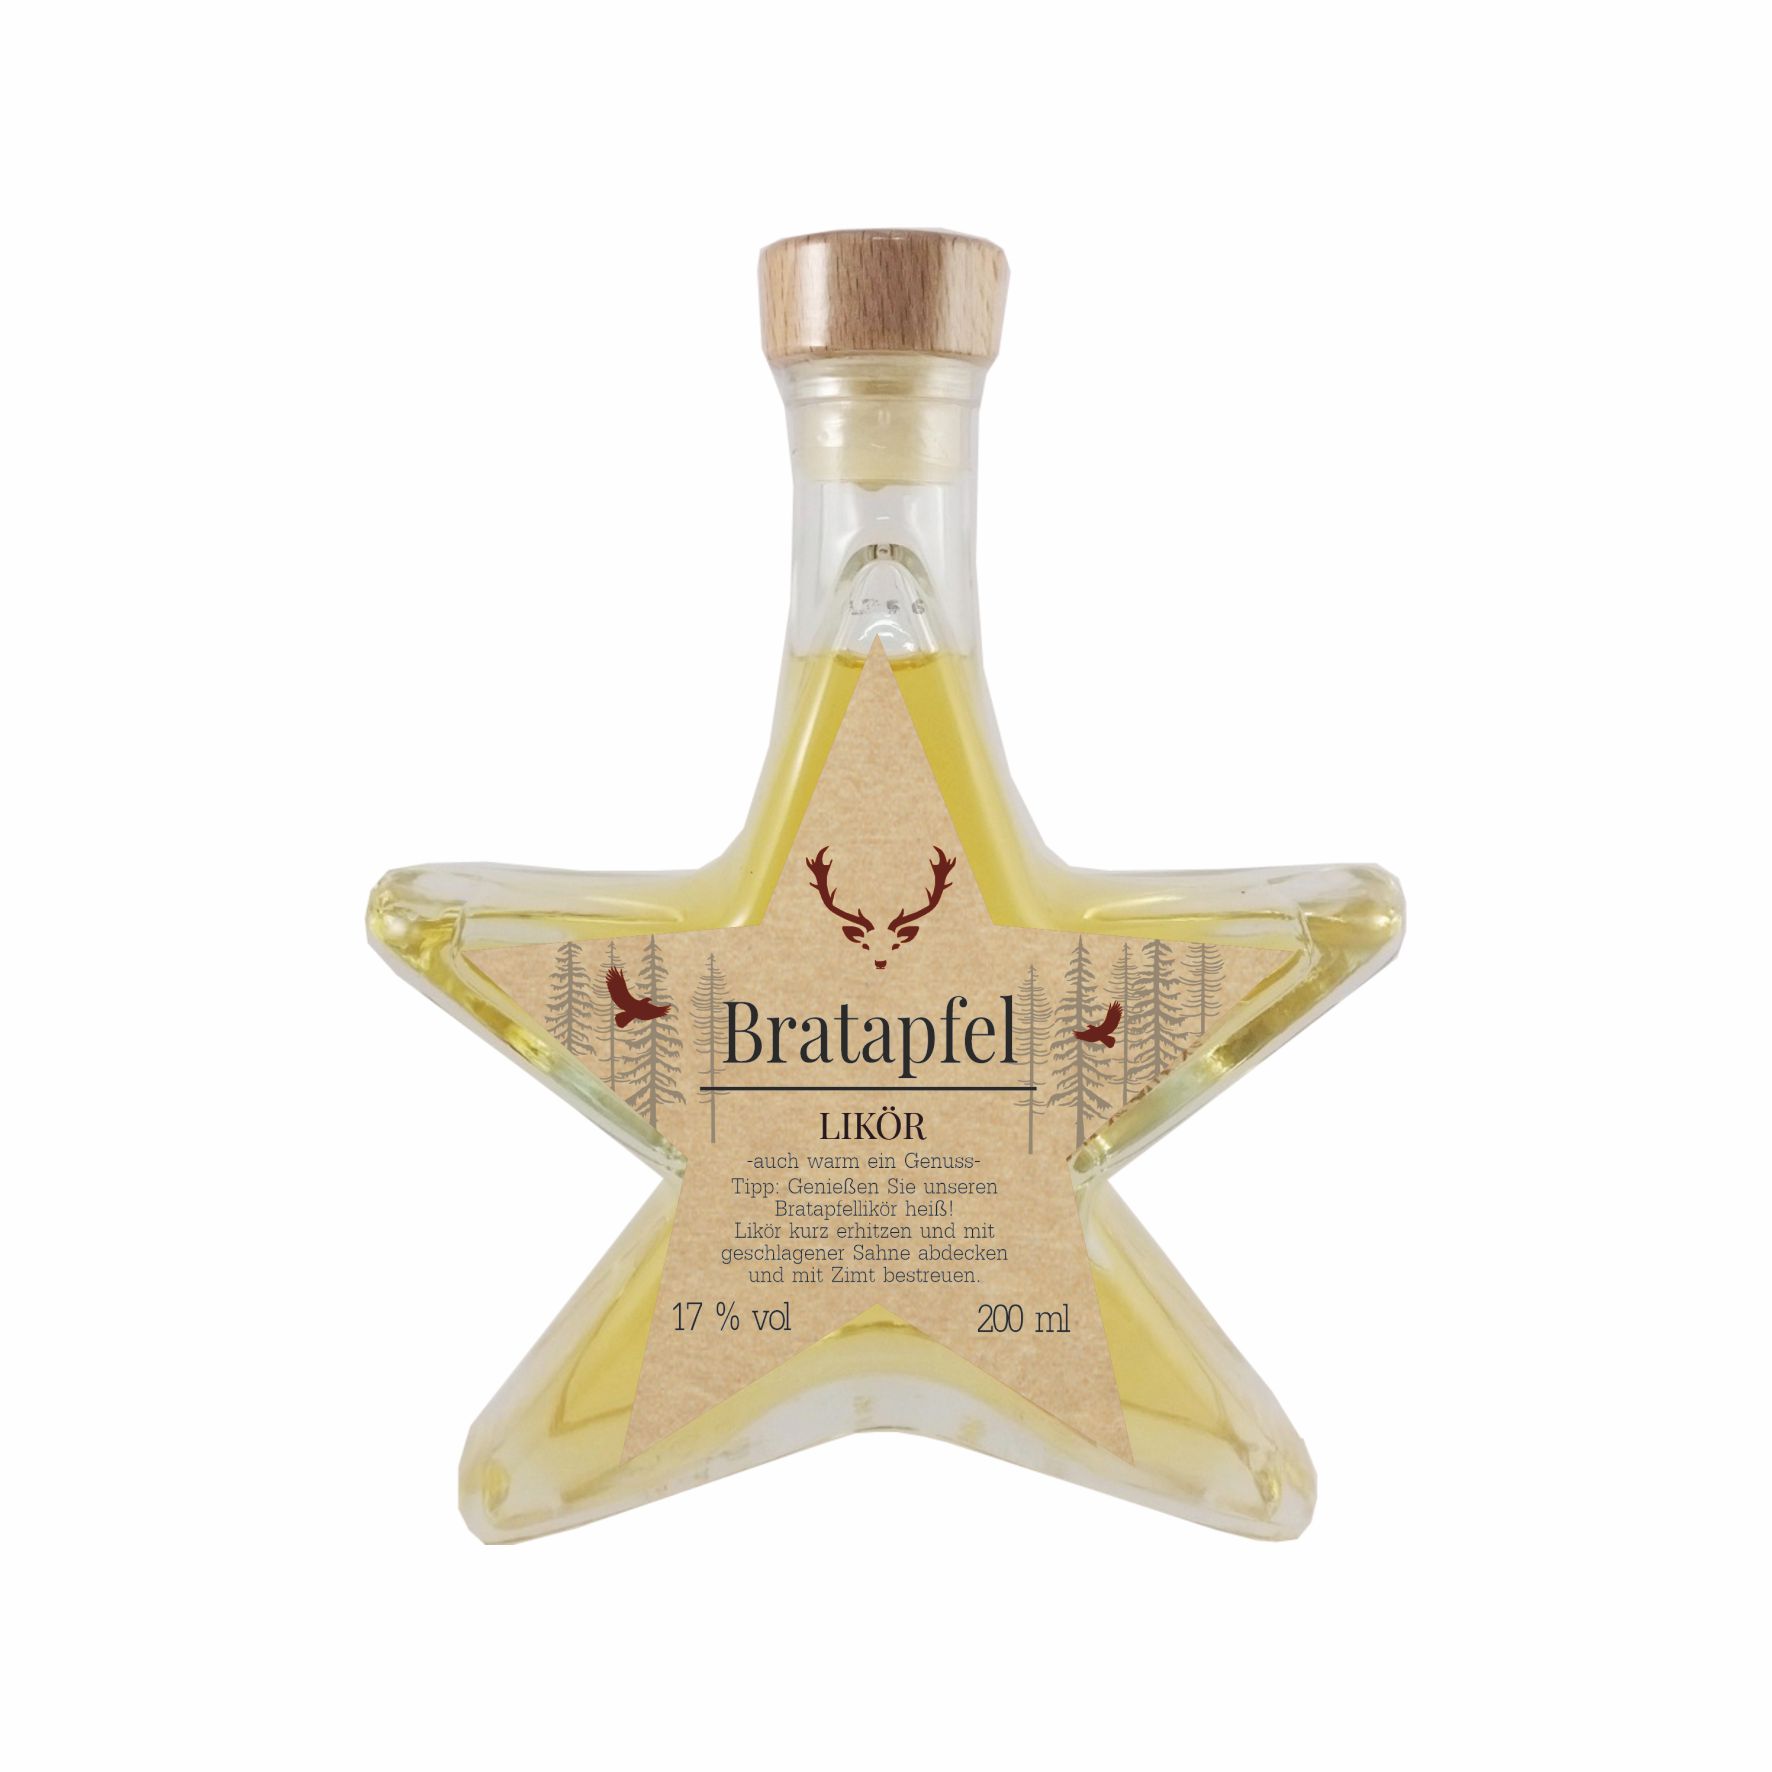 Bratapfel-Likör Sternflasche 17 % vol. ( 200 ml )